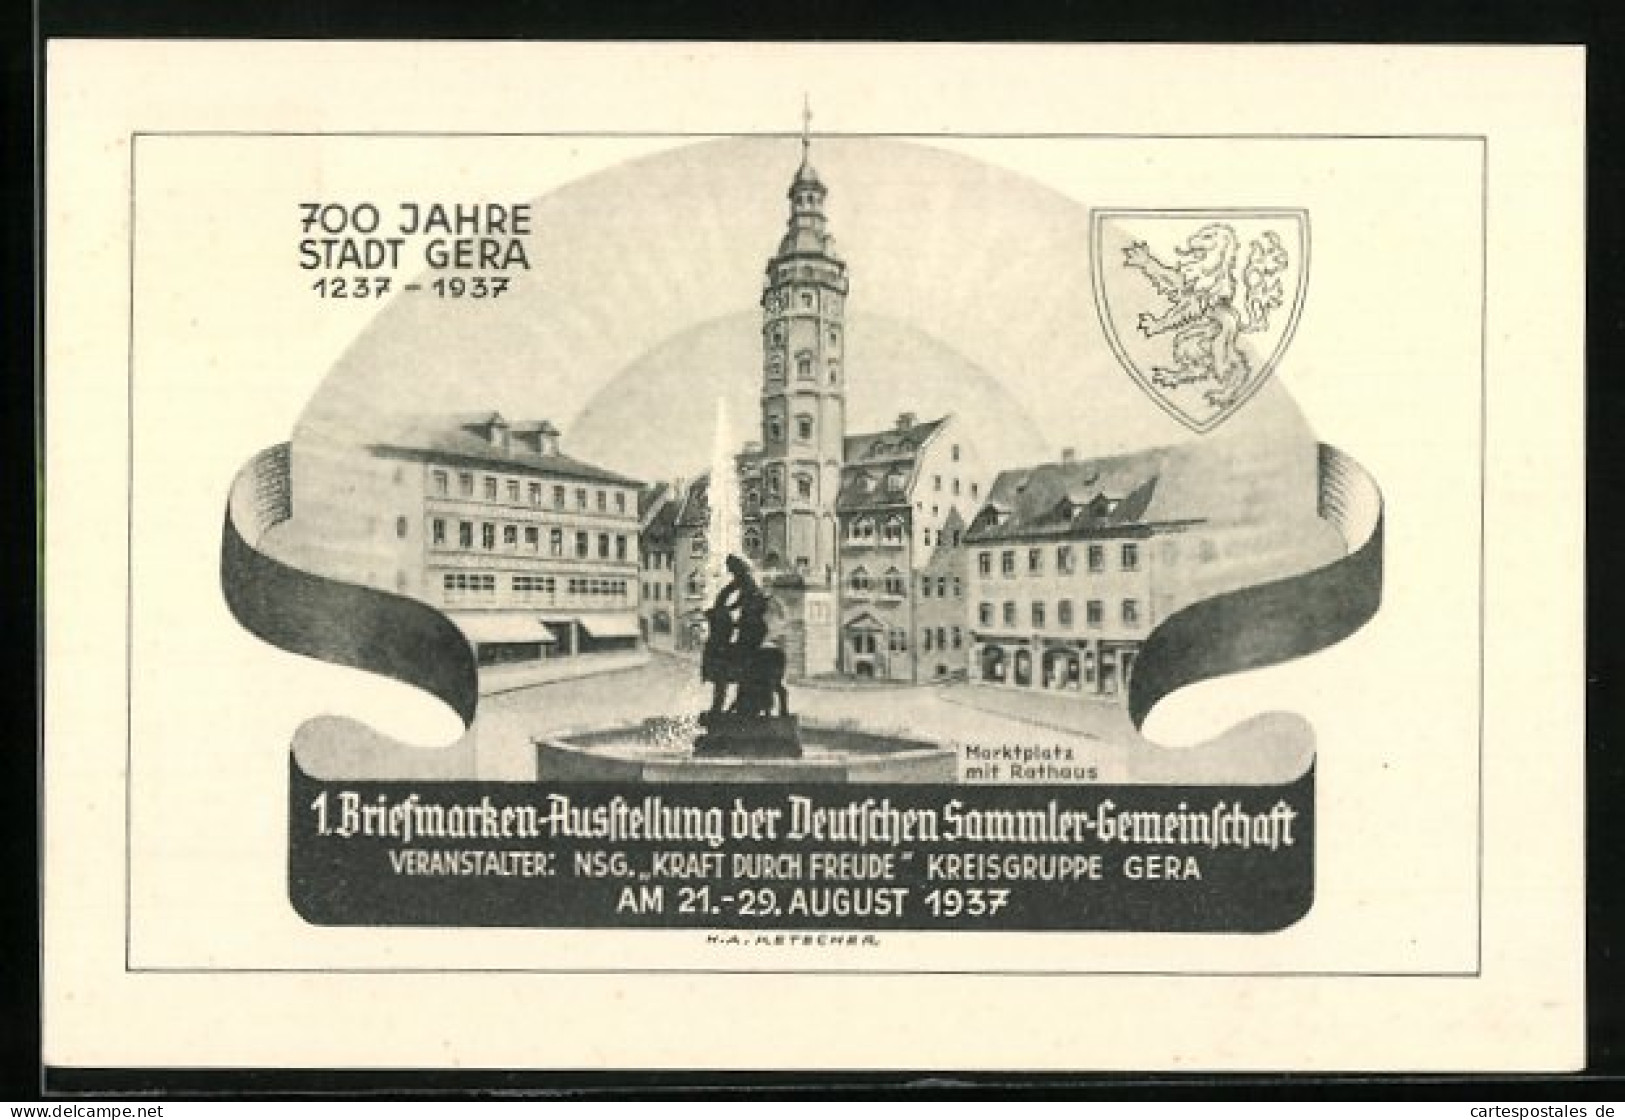 AK Gera, 1. Briefmarken-Ausstellung Der Deutschen Sammler-Gemeinschaft 1937, Marktplatz Mit Rathaus, Ganzsache  - Timbres (représentations)